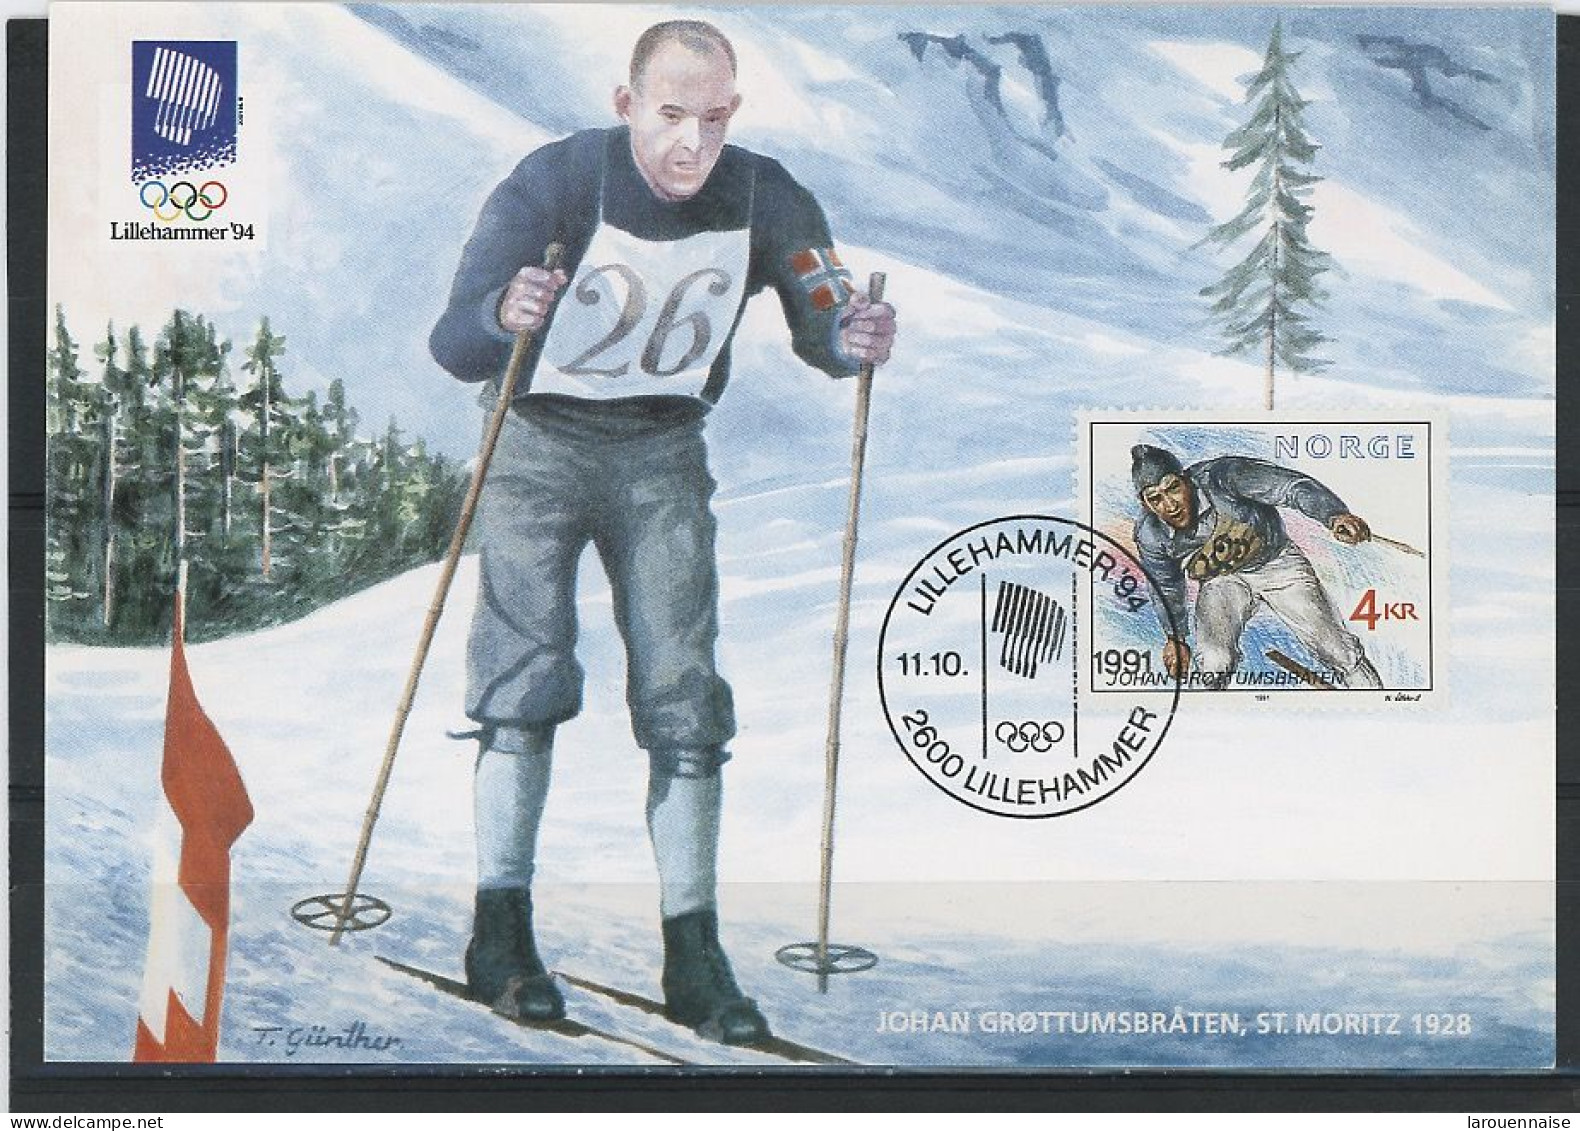 JEUX OLYMPIQUES - COMBINÉ NORDIC - JOHAN GROTTUMSBRATEN -ST MORITZ 1928 - Jeux Olympiques